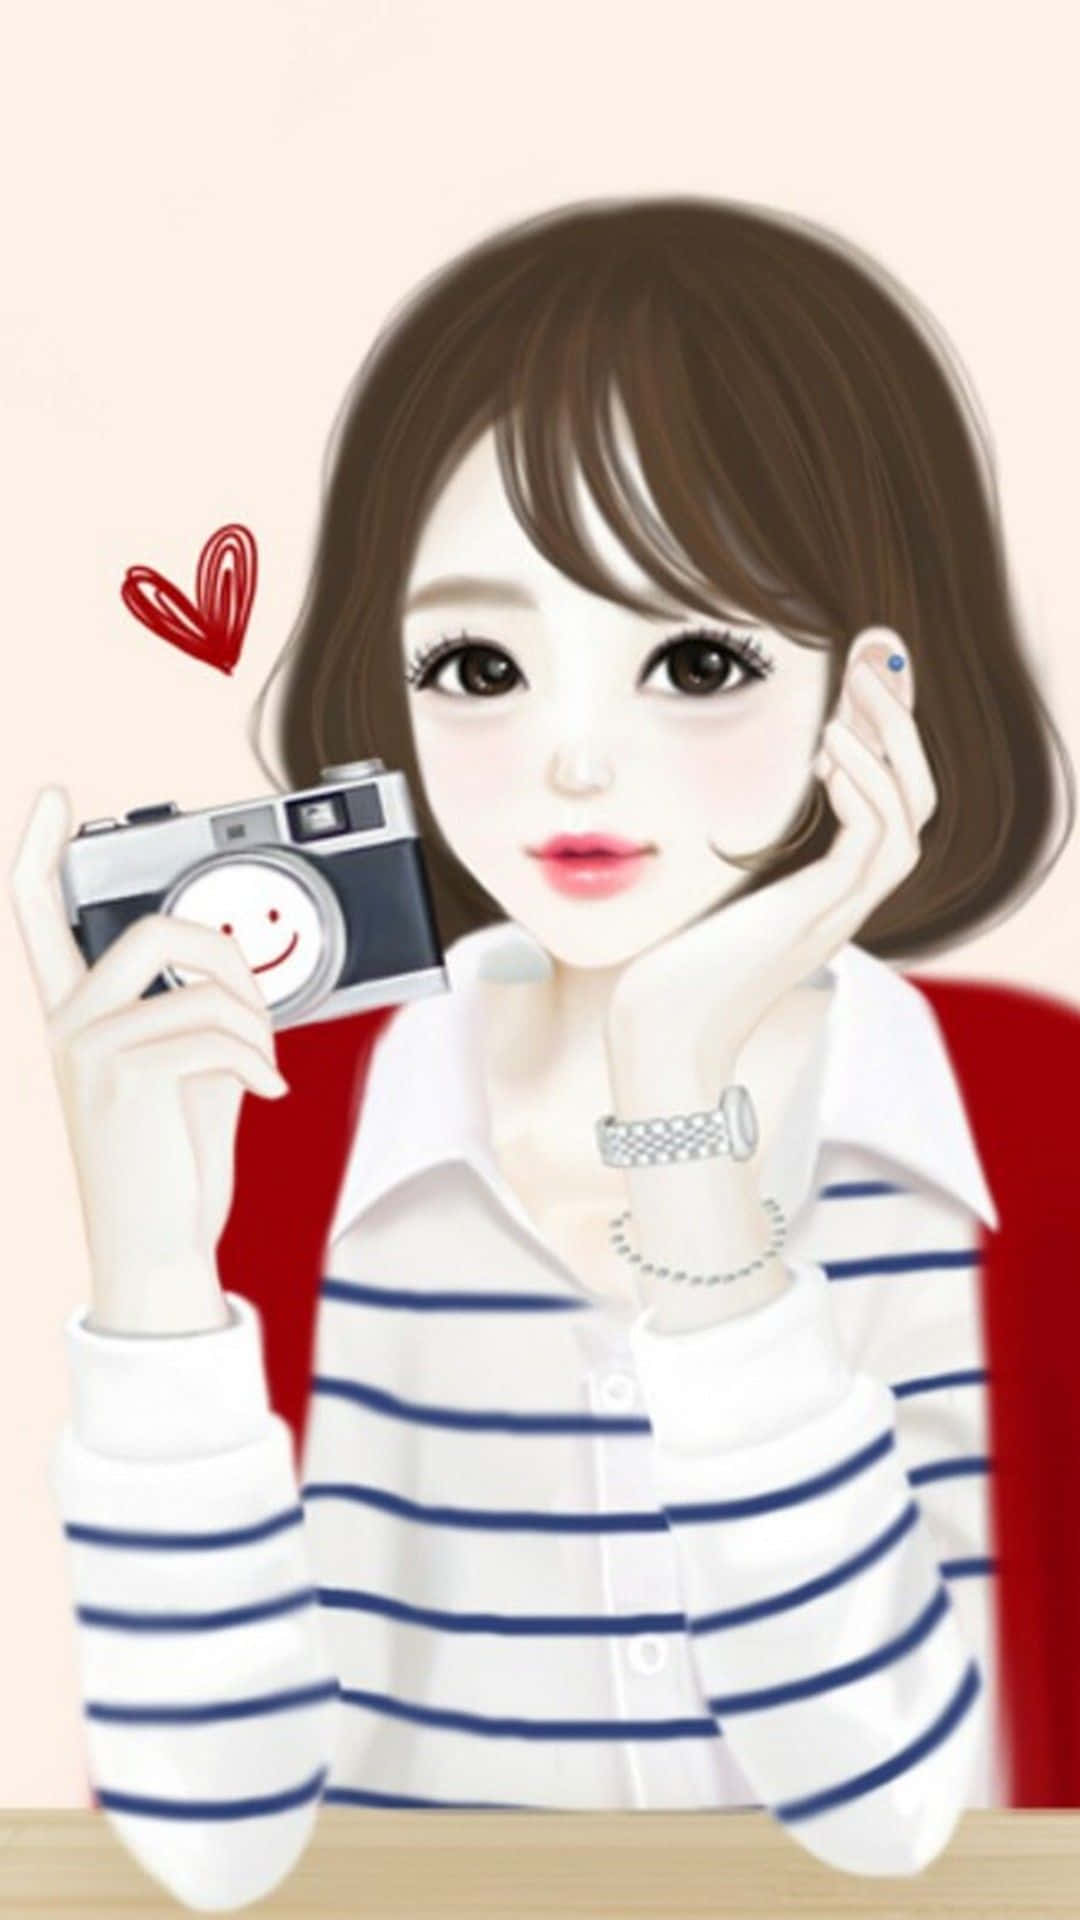 Korean Anime Girl Holding A Camera